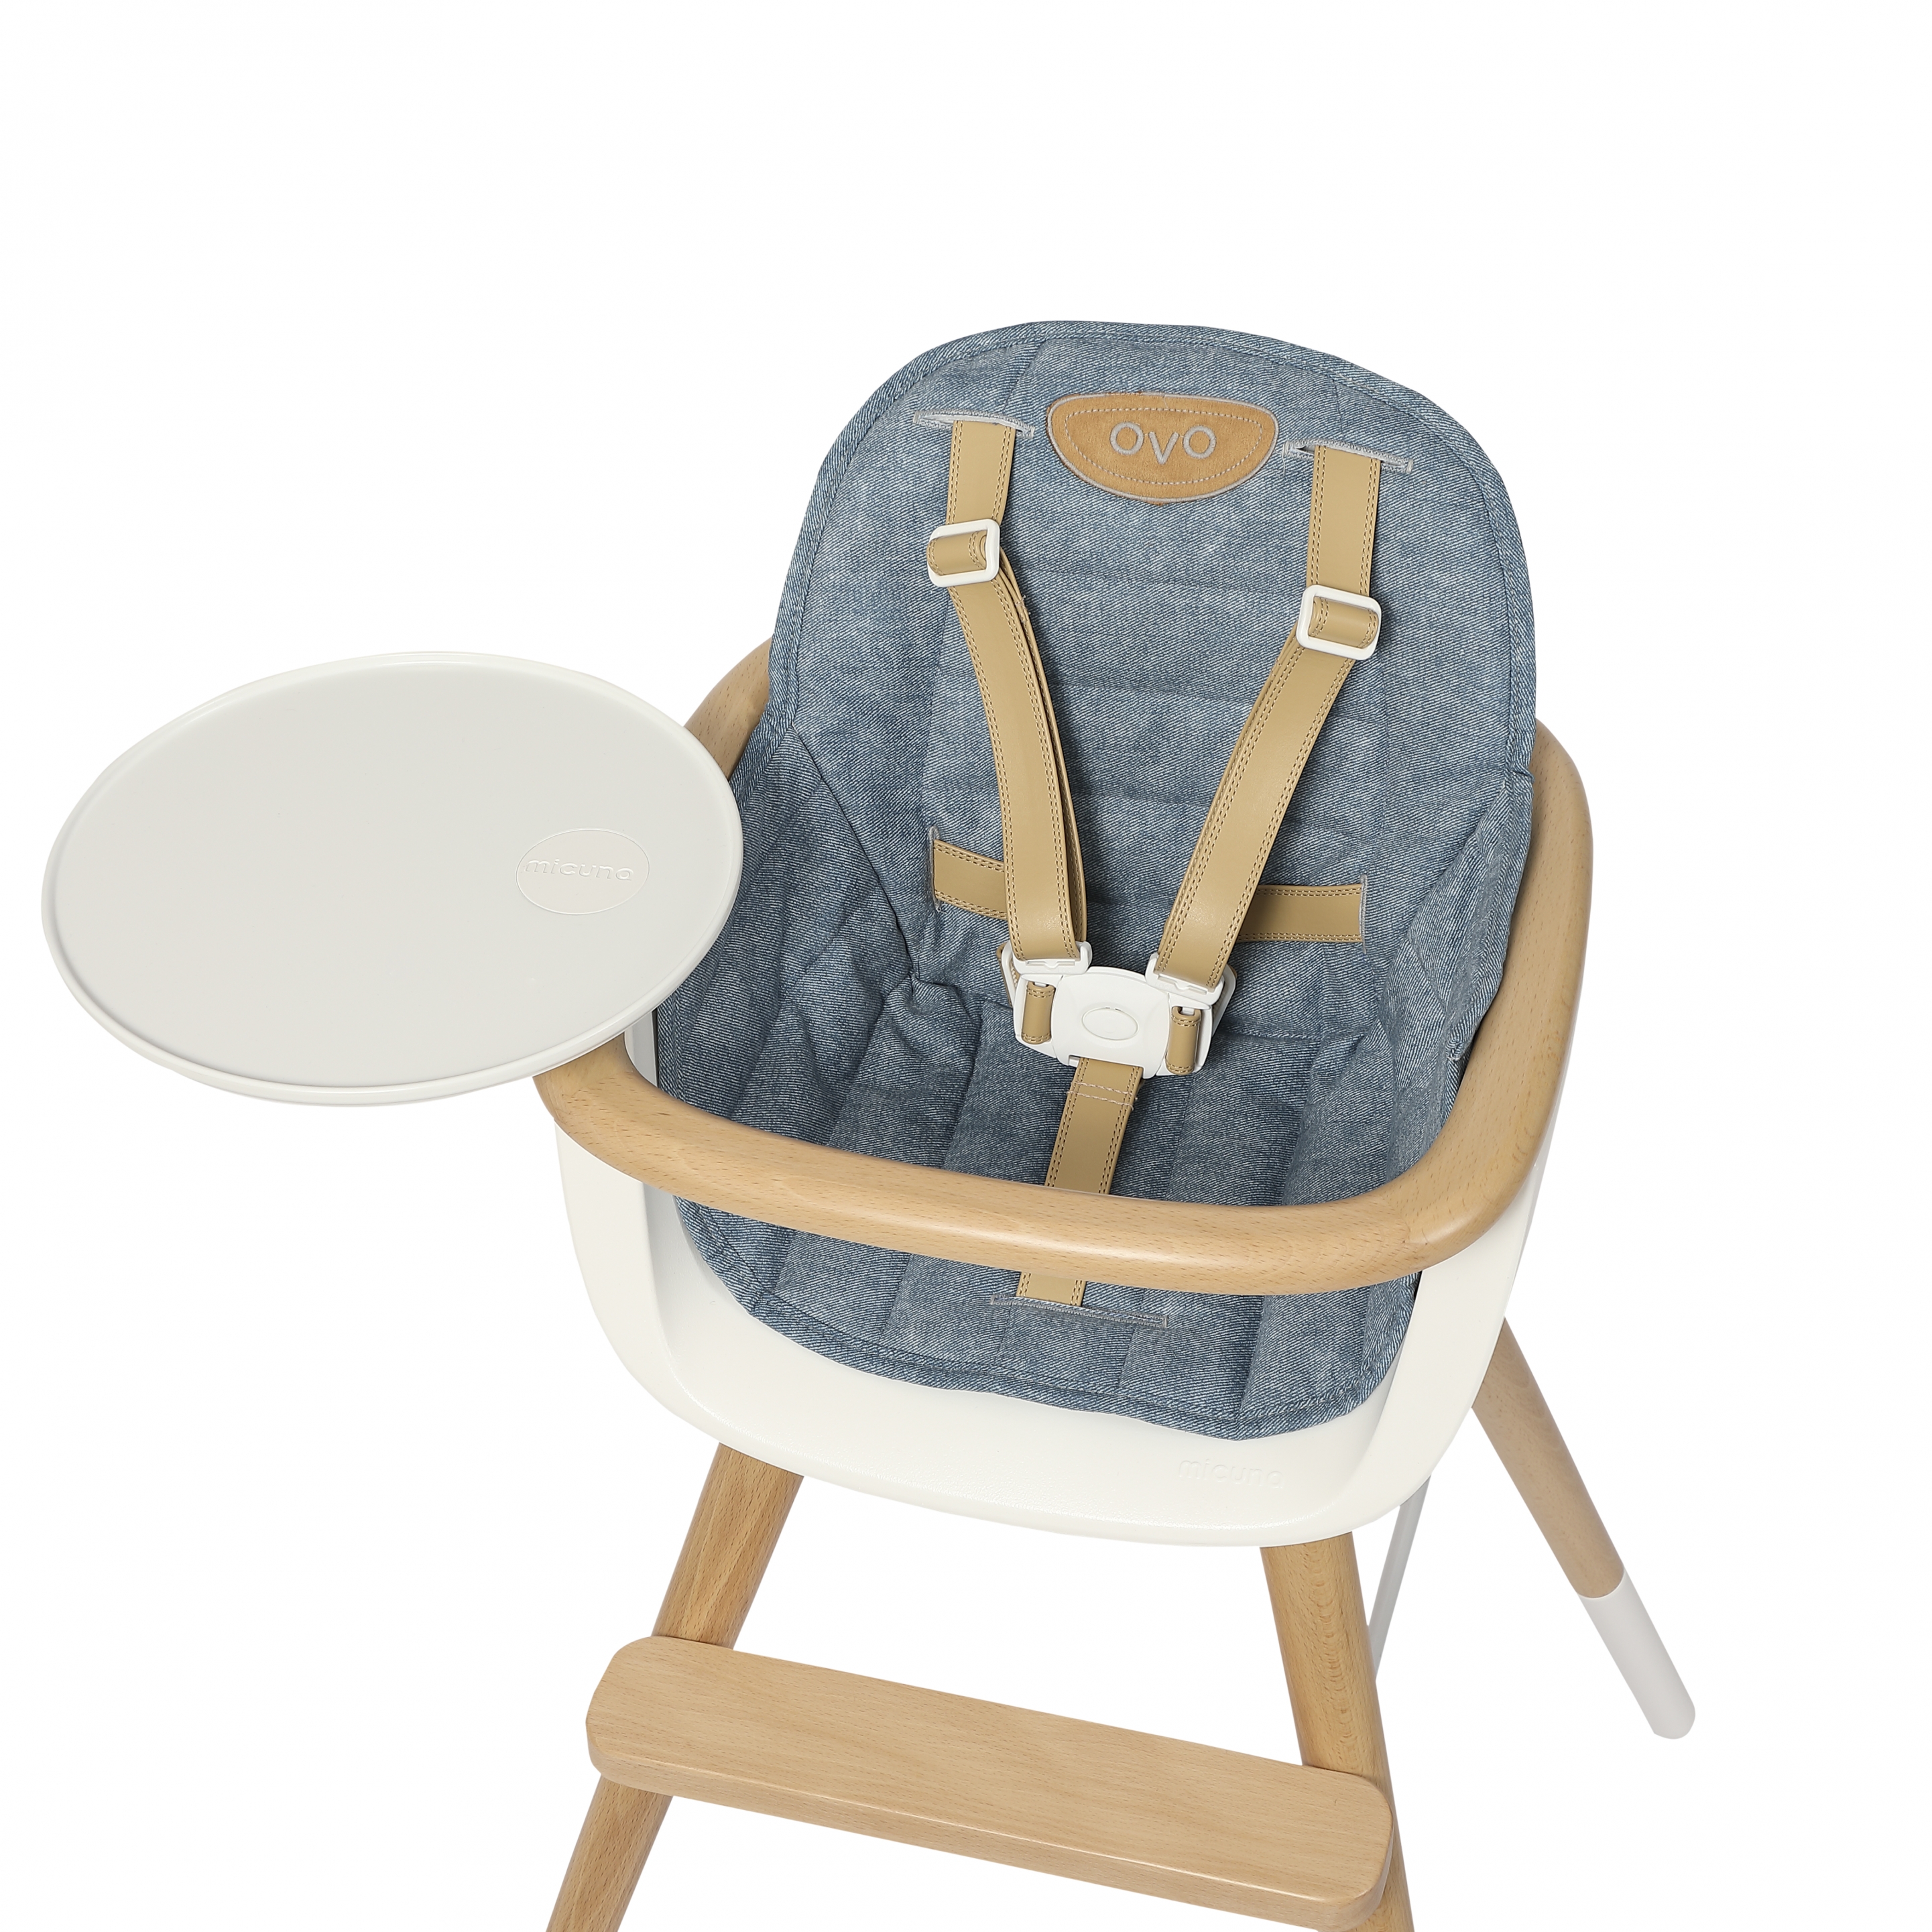 Micuna - Pieds en kit pour chaise haute OVO - Set de 4 - Gris